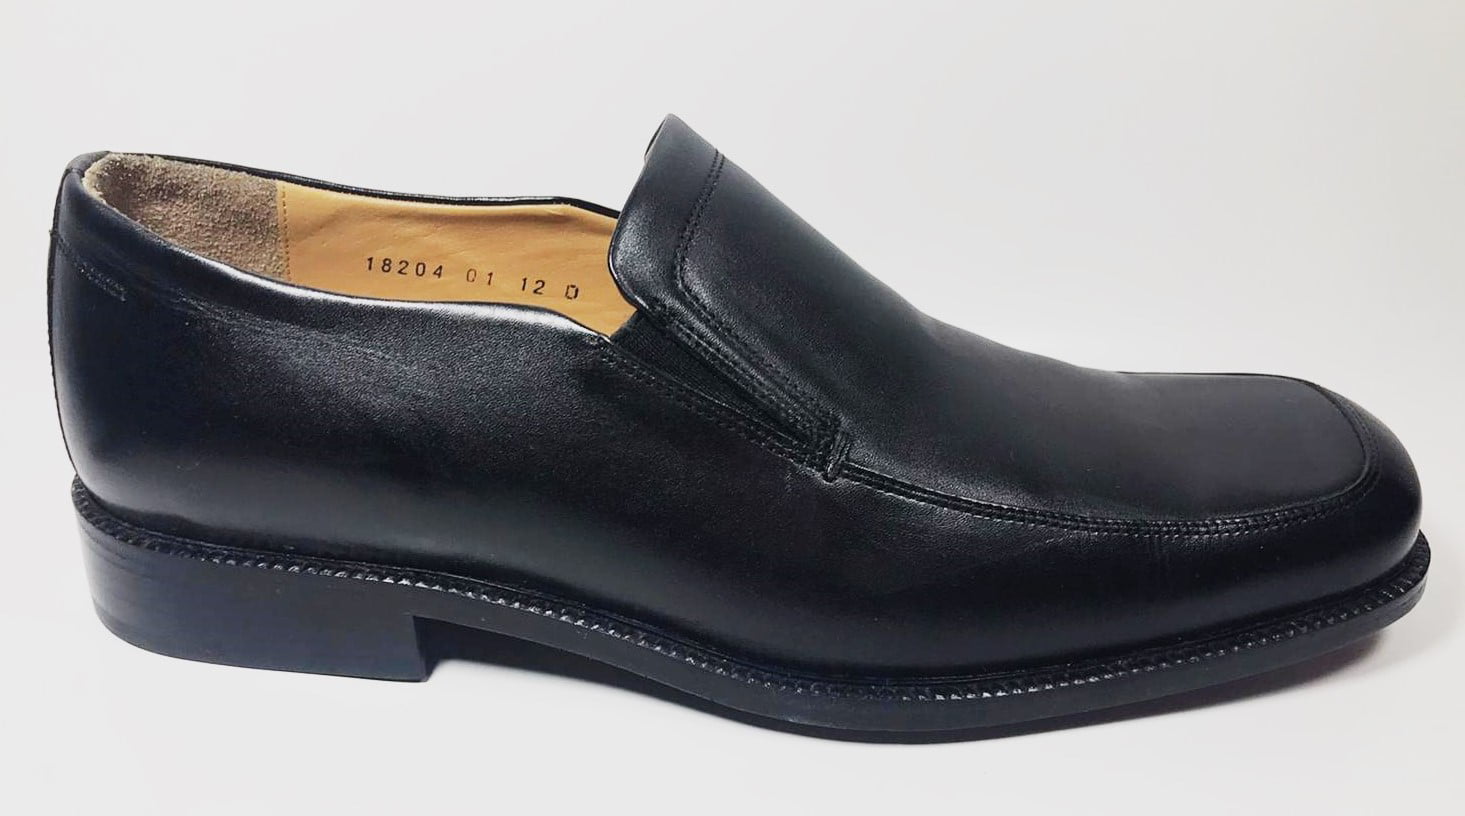 Florsheim Men`s Slip on Loafer Style 18204, Black - Size 12D - Walmart.com